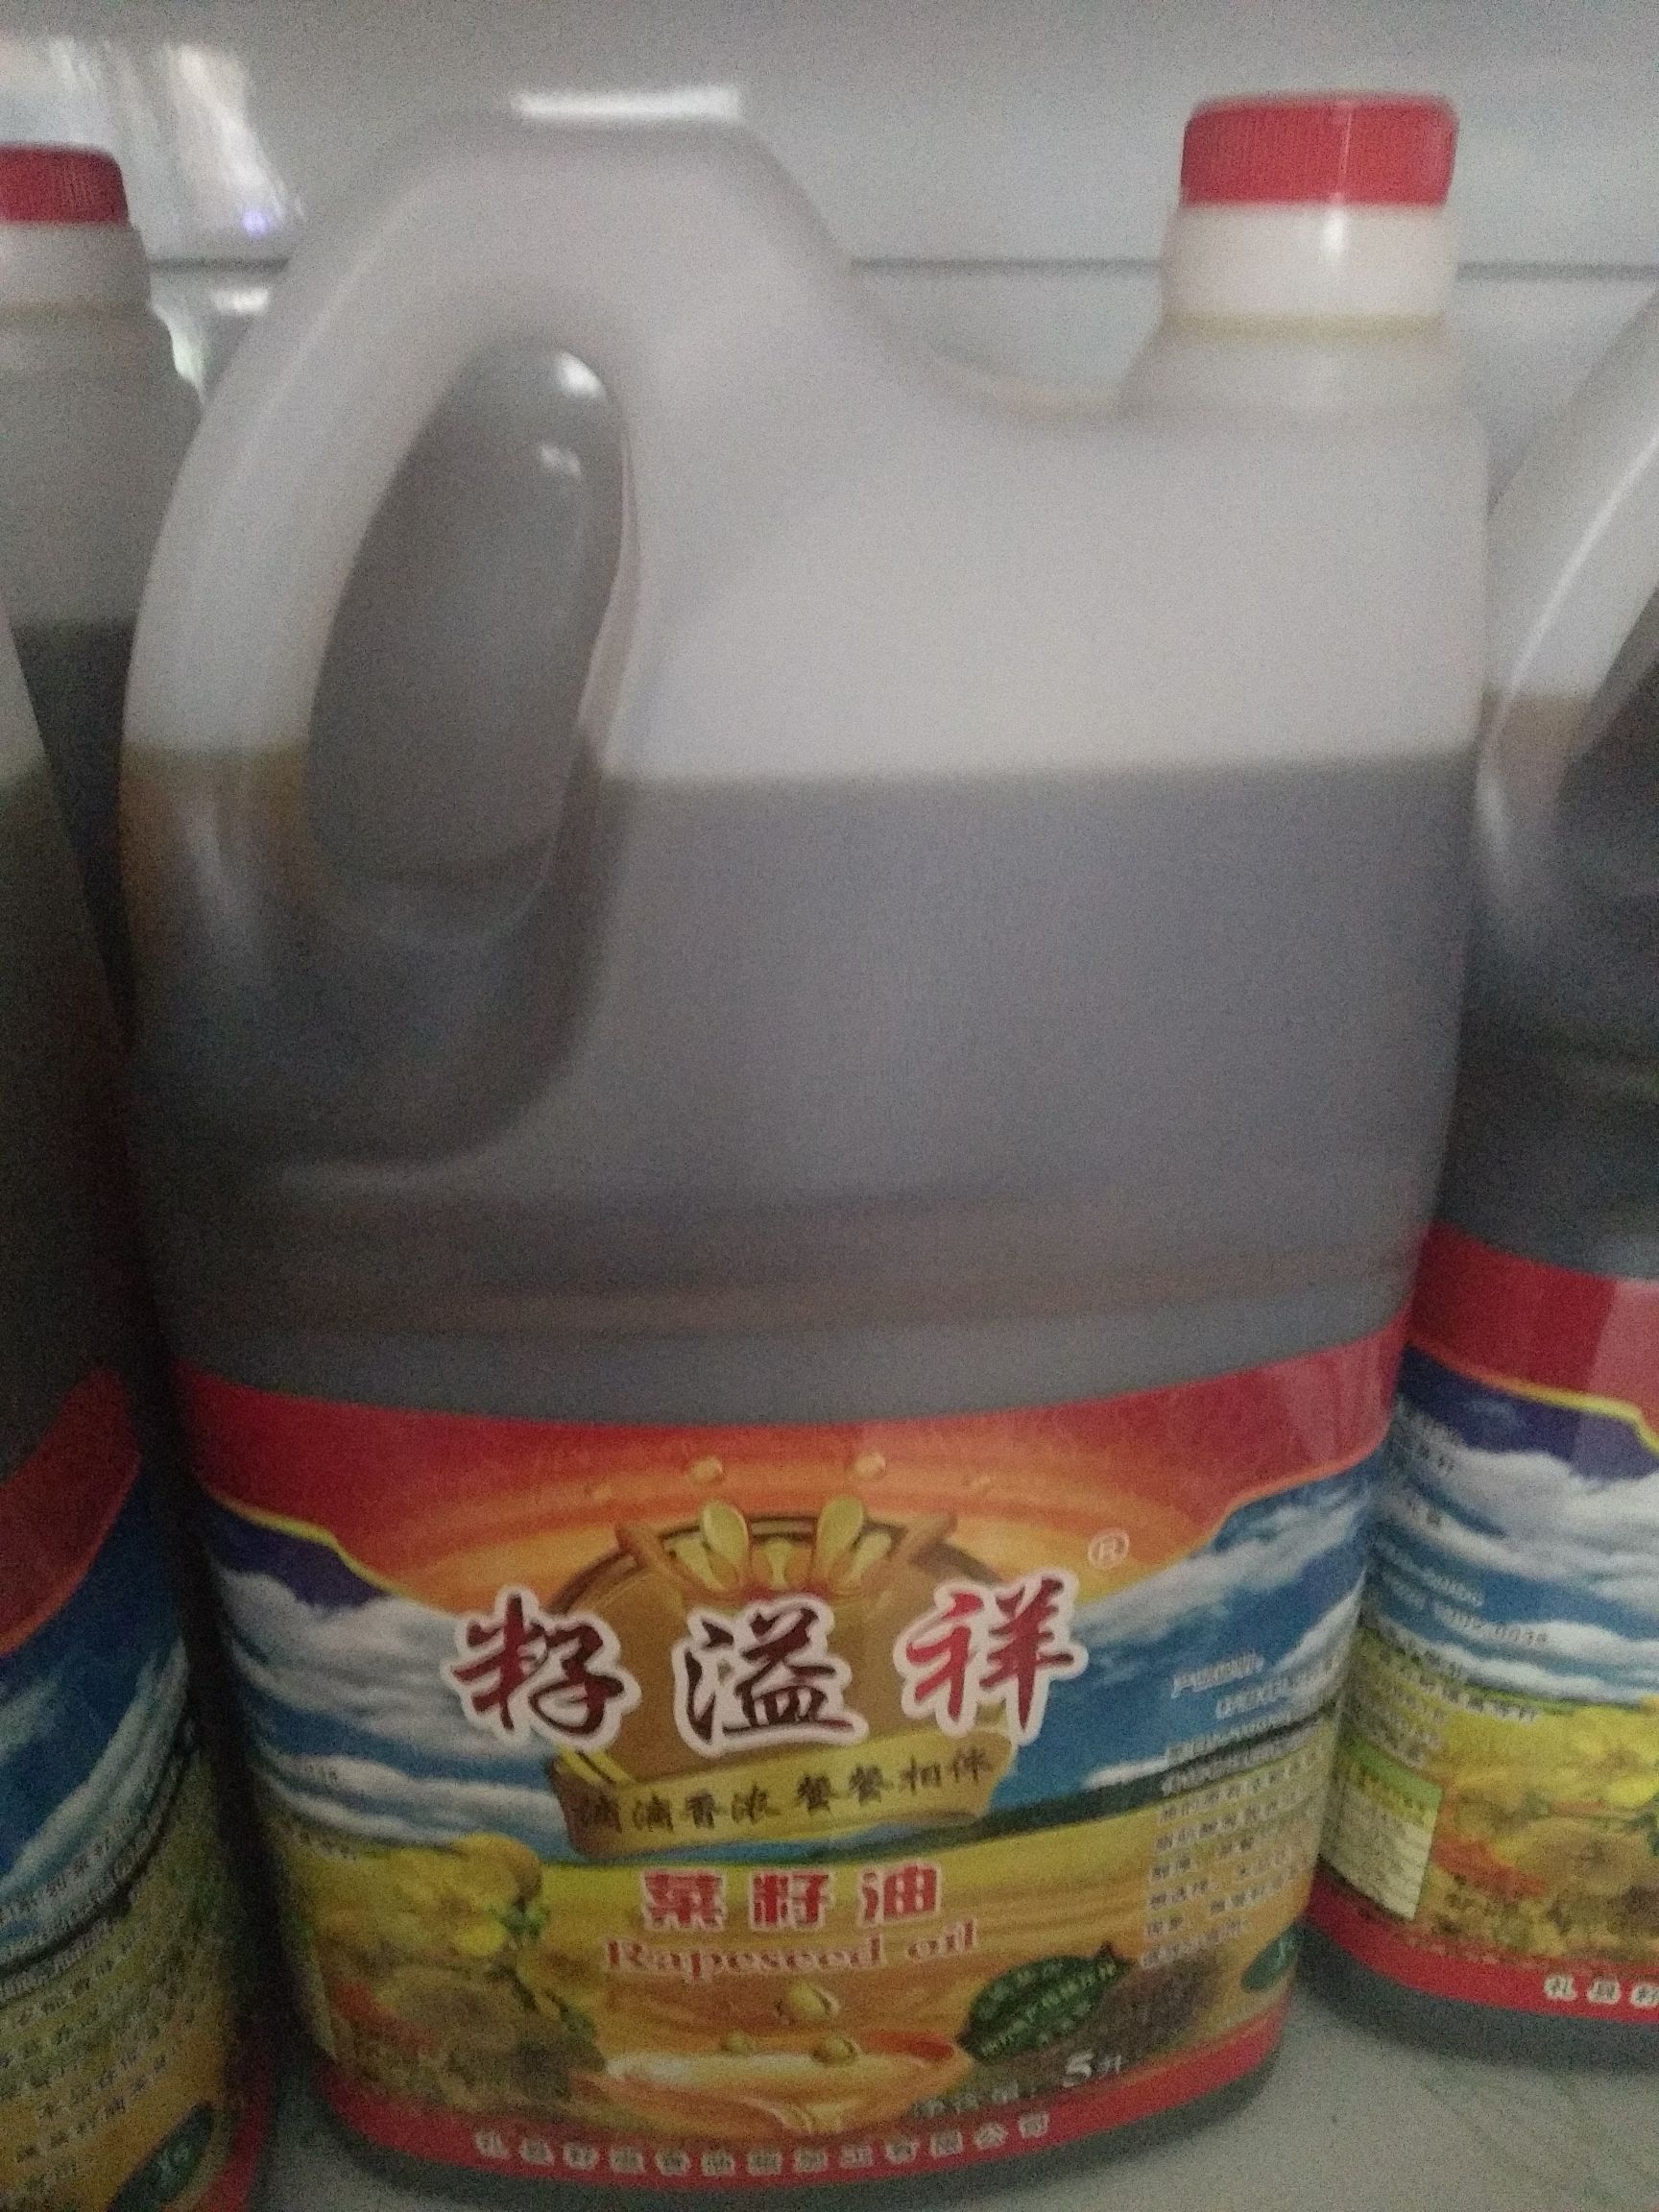 礼县农家自榨菜籽油无掺假非掺大豆油纯菜籽油